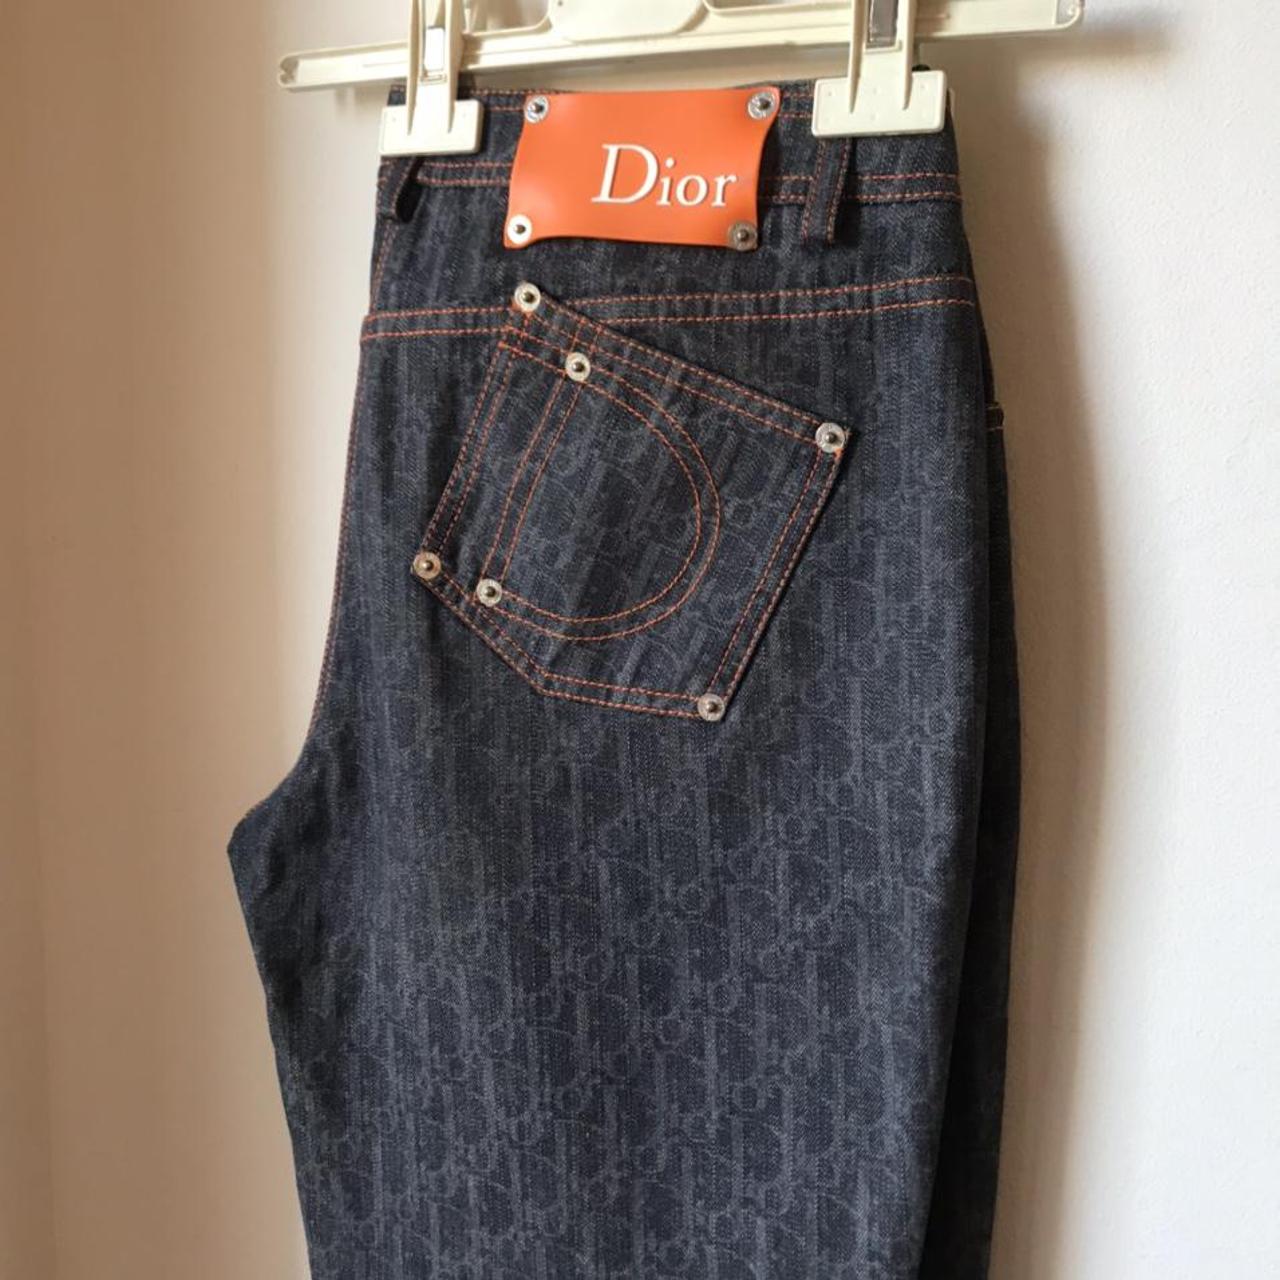 Dior Vintage Monogram Jeans pantaloni jeans Dior... - Depop